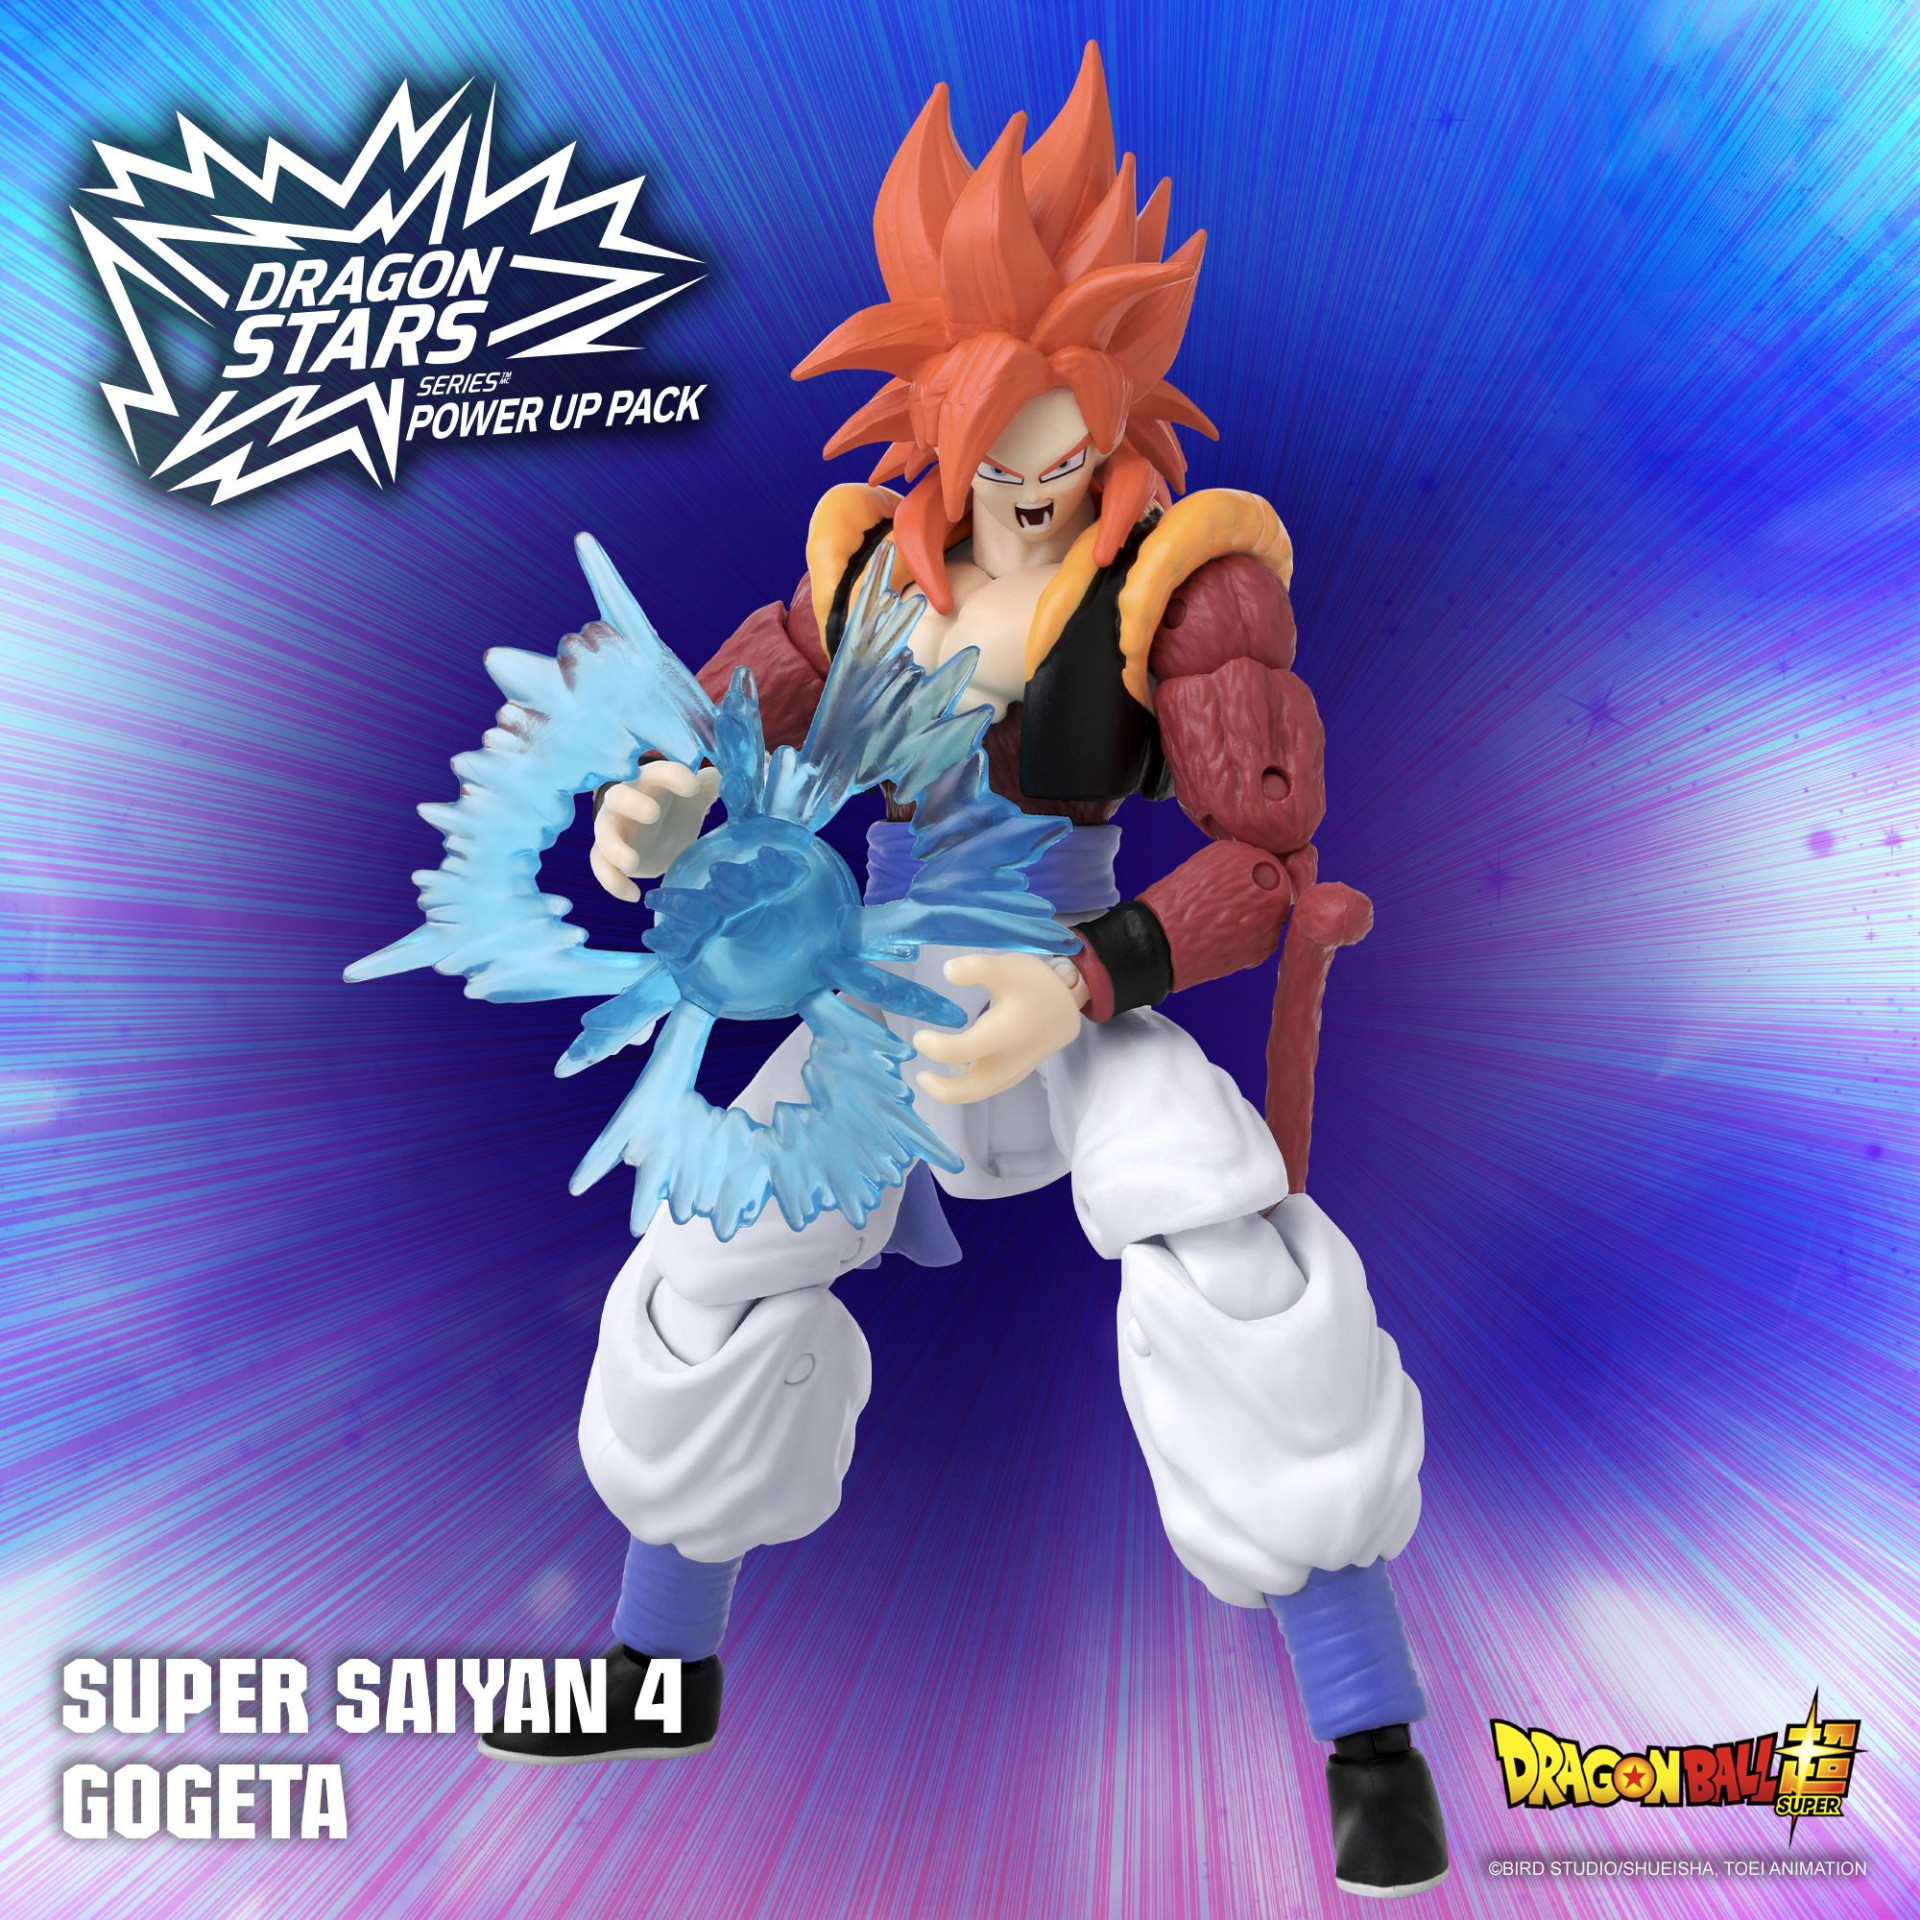 Super Saiyan 4 Gogeta ist jetzt im Dragon Stars Series Power Up Pack erhältlich!